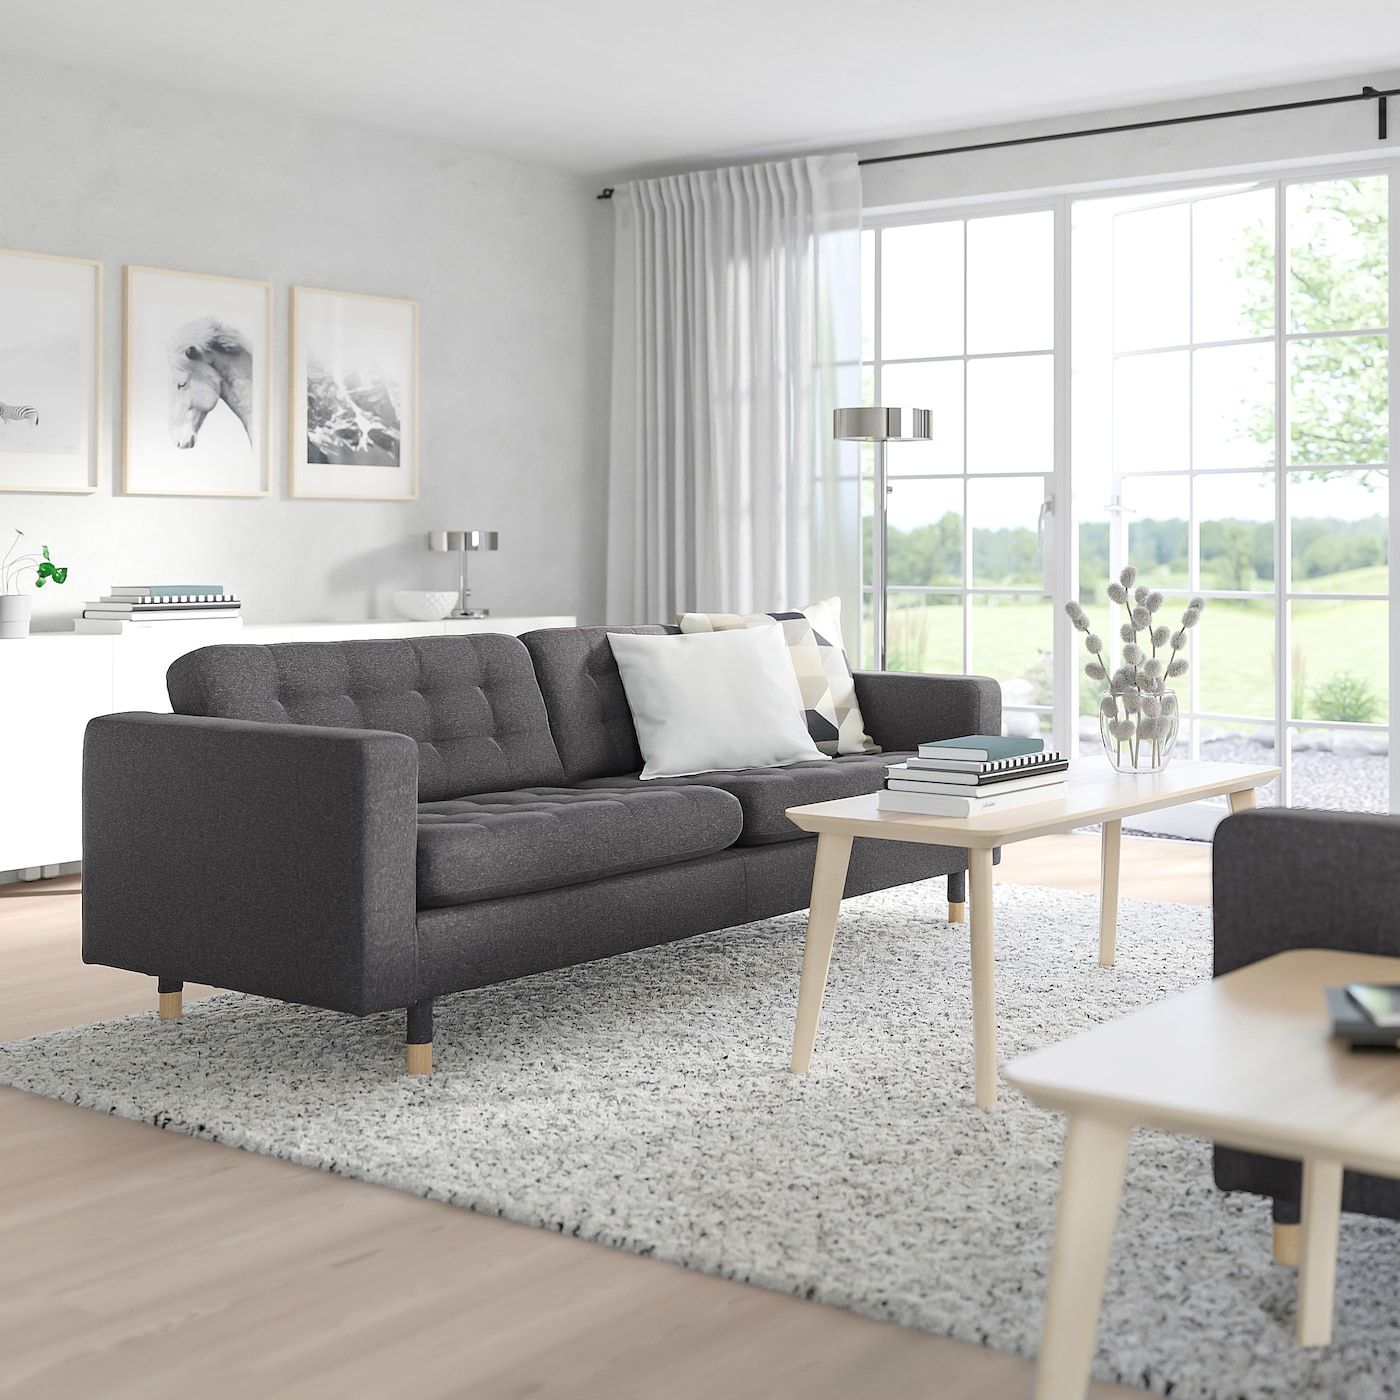 Morabo Sofa, Gunnared Dark Gray – Ikea In Sofas In Dark Gray (View 4 of 15)